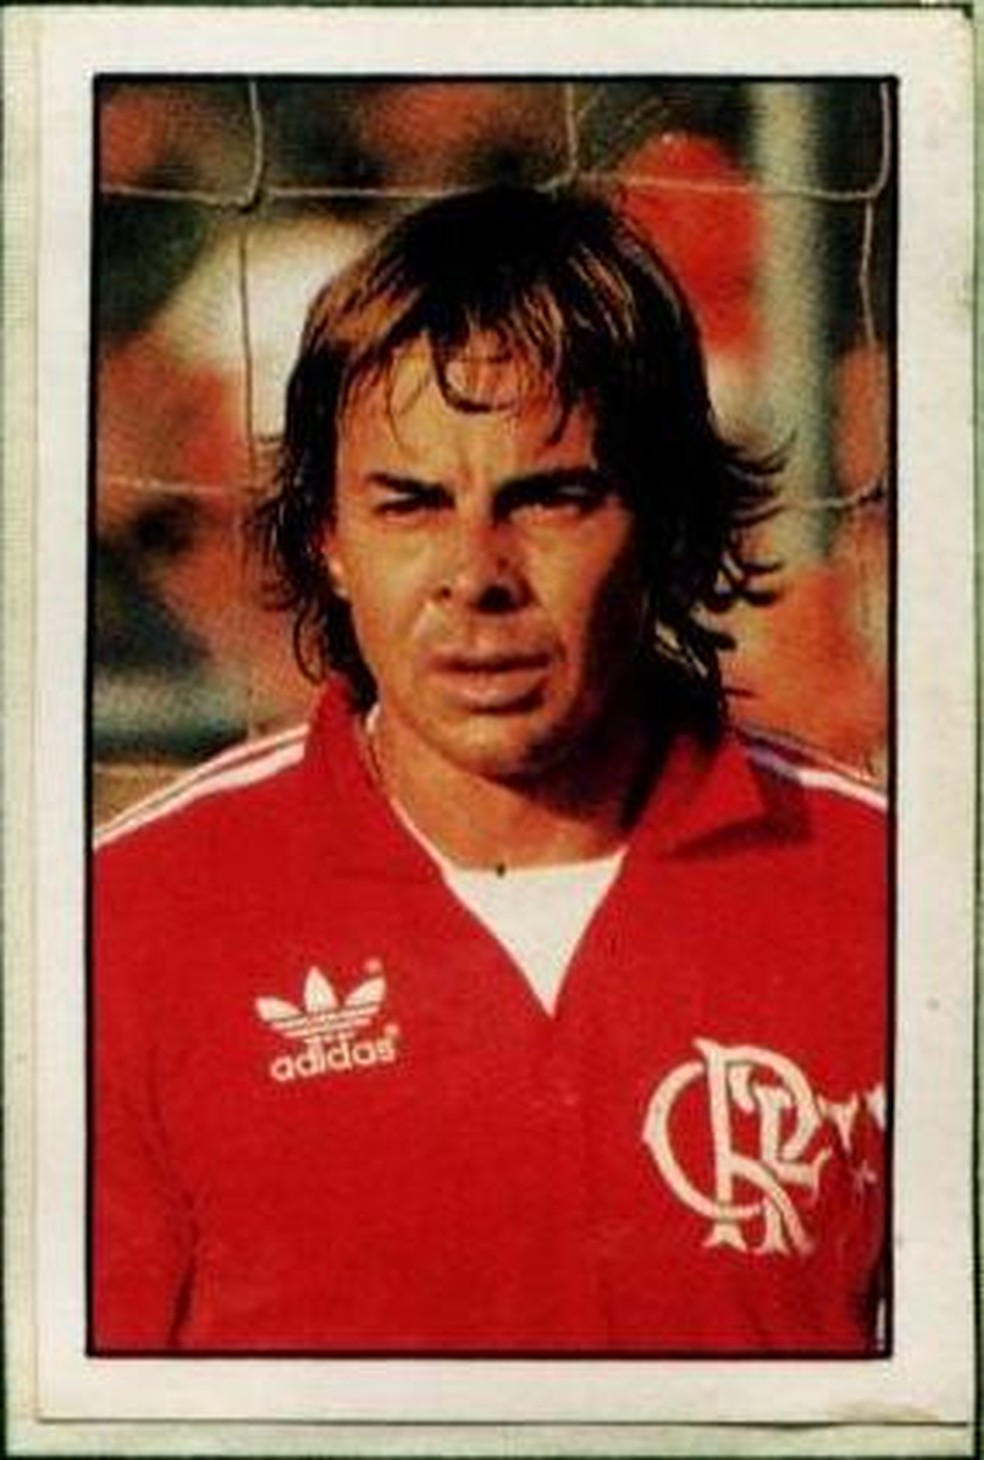 Cantarele virou ídolo do Flamengo nos anos 80 — Foto: Reprodução